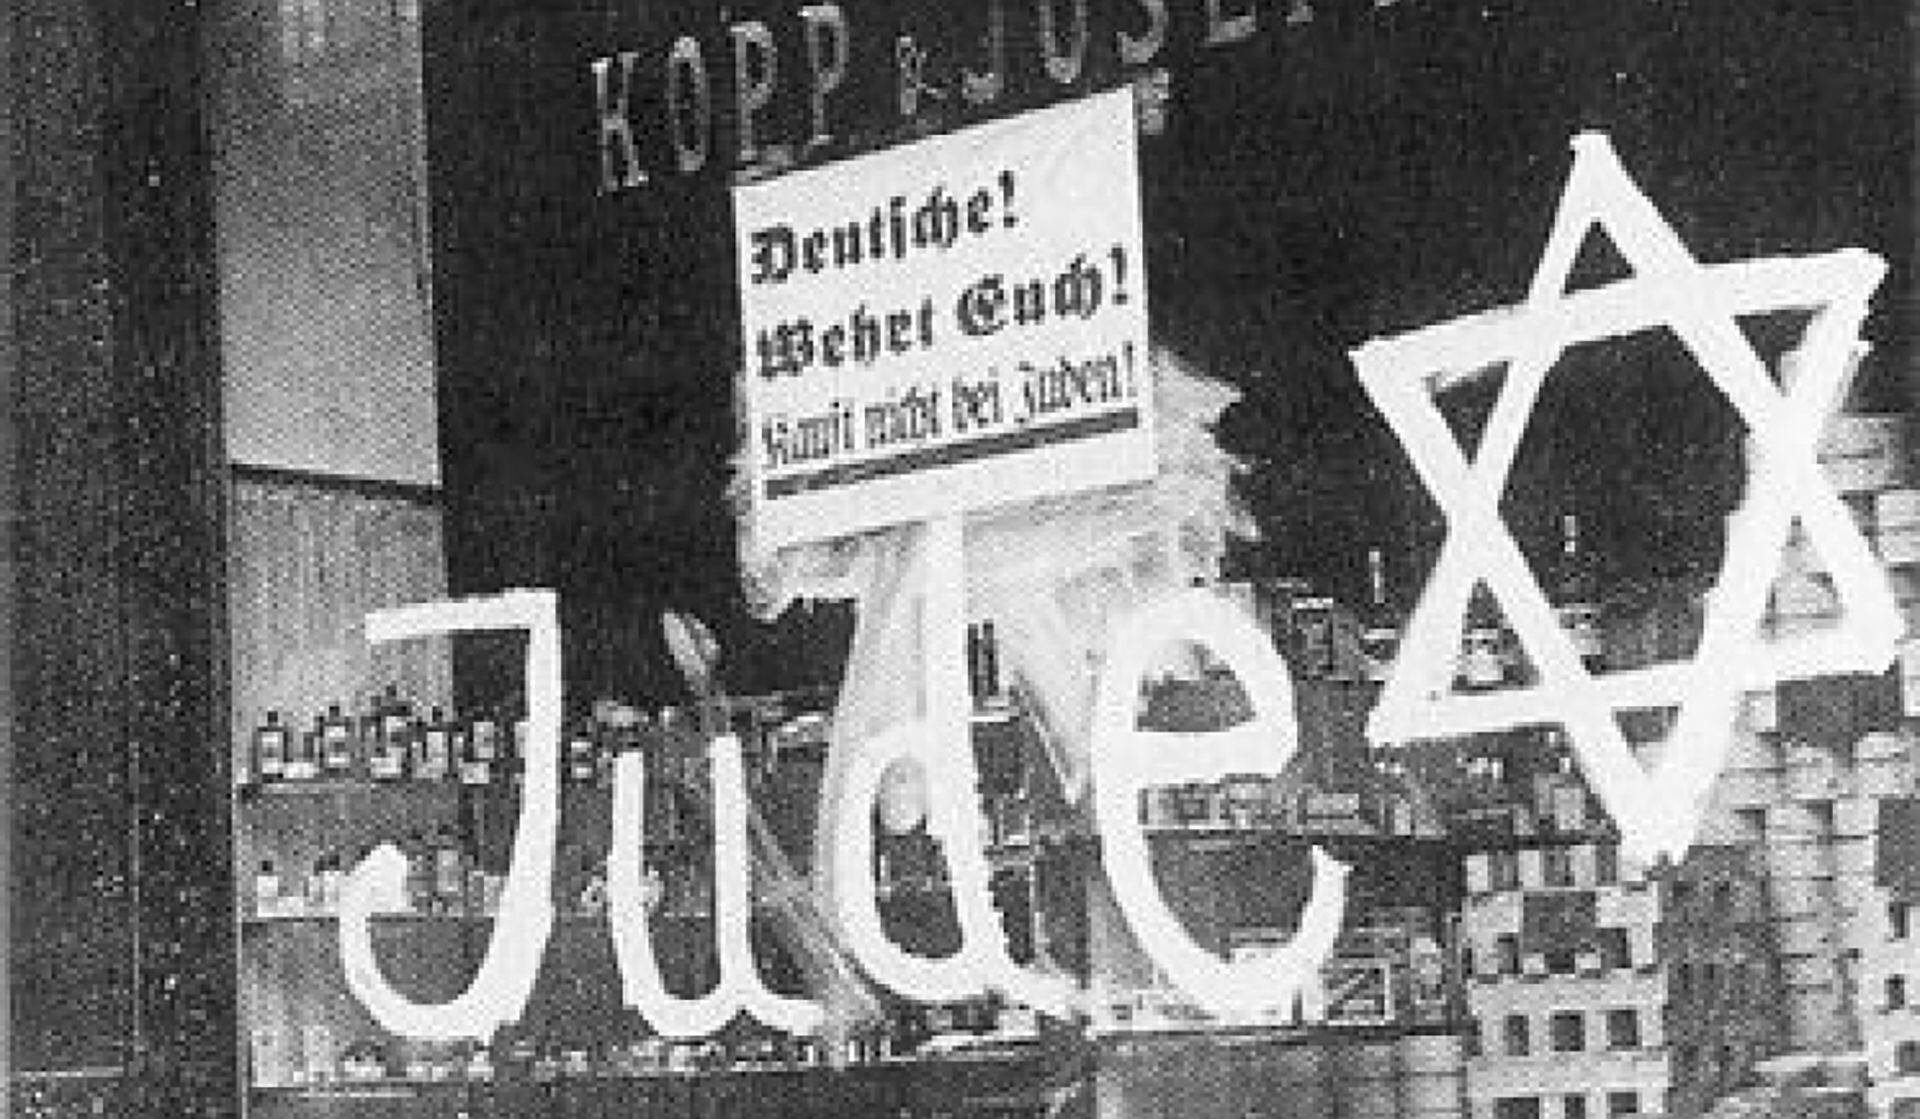 El nazismo señaló cuáles eran los negocios de la comunidad judía para que fueran identificados y destruidos